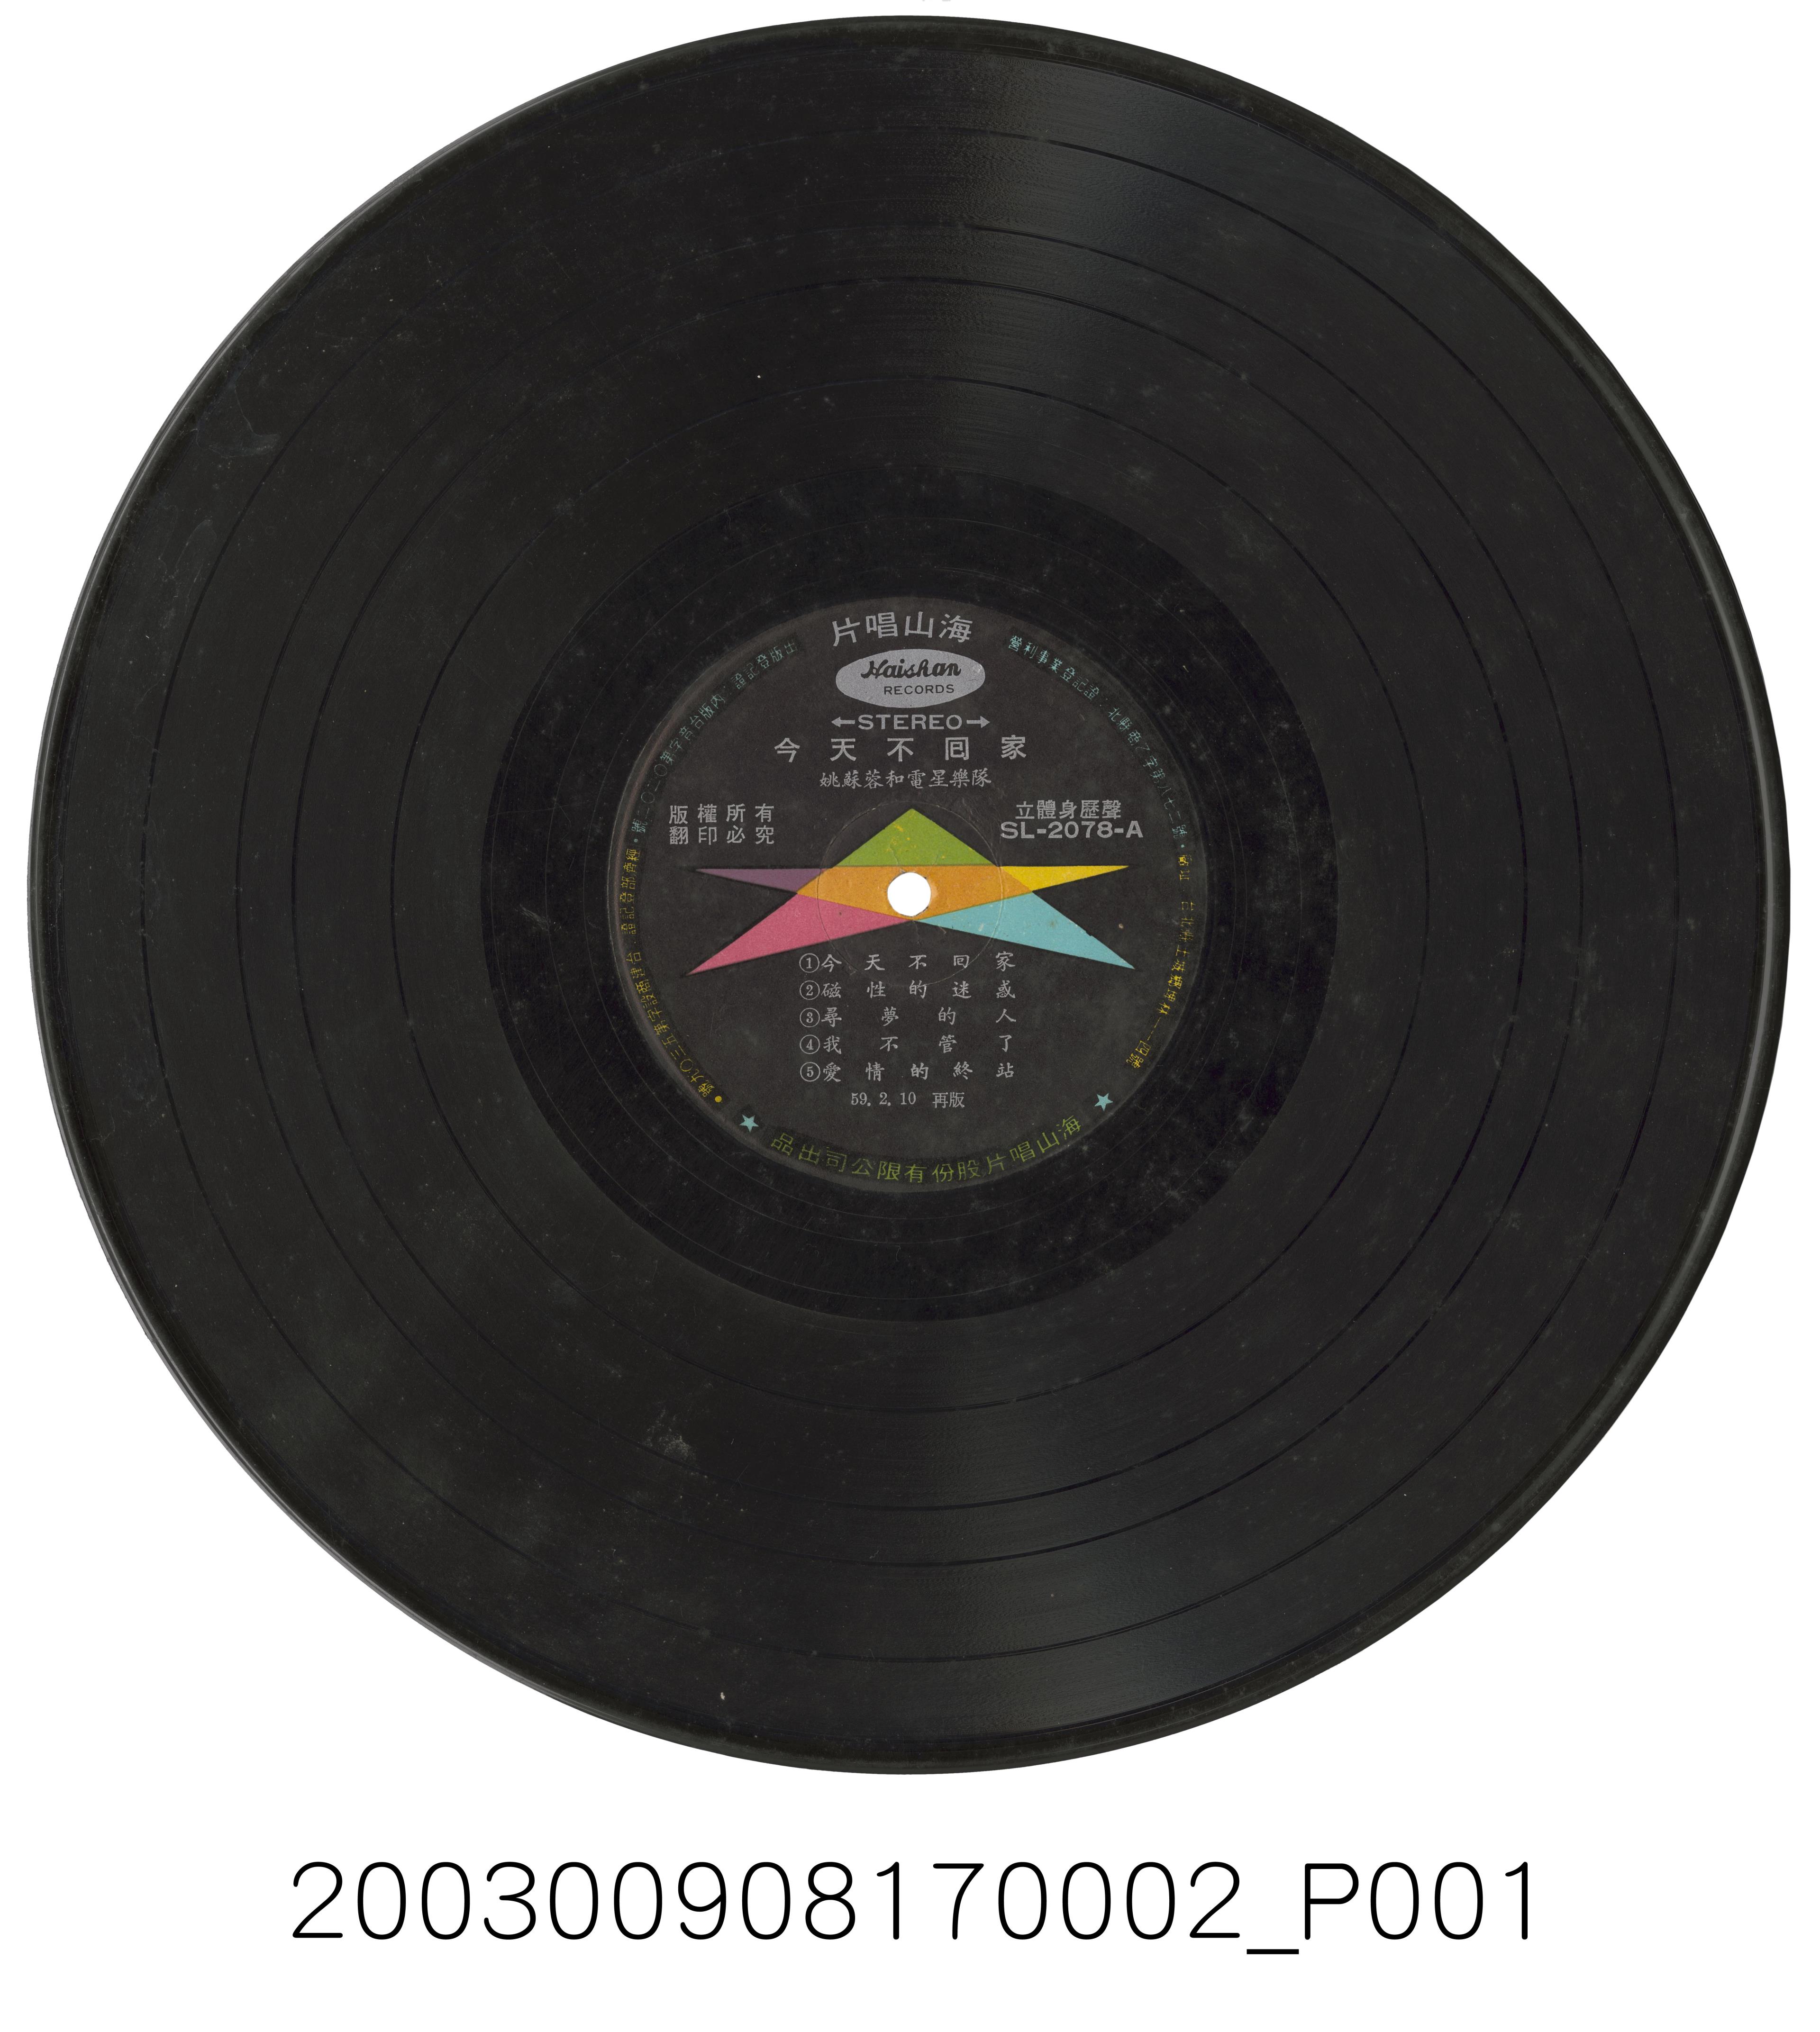 海山唱片公司出品編號「SL-2078」國語流行歌曲專輯《今天要回家》12吋塑膠唱片 (共2張)